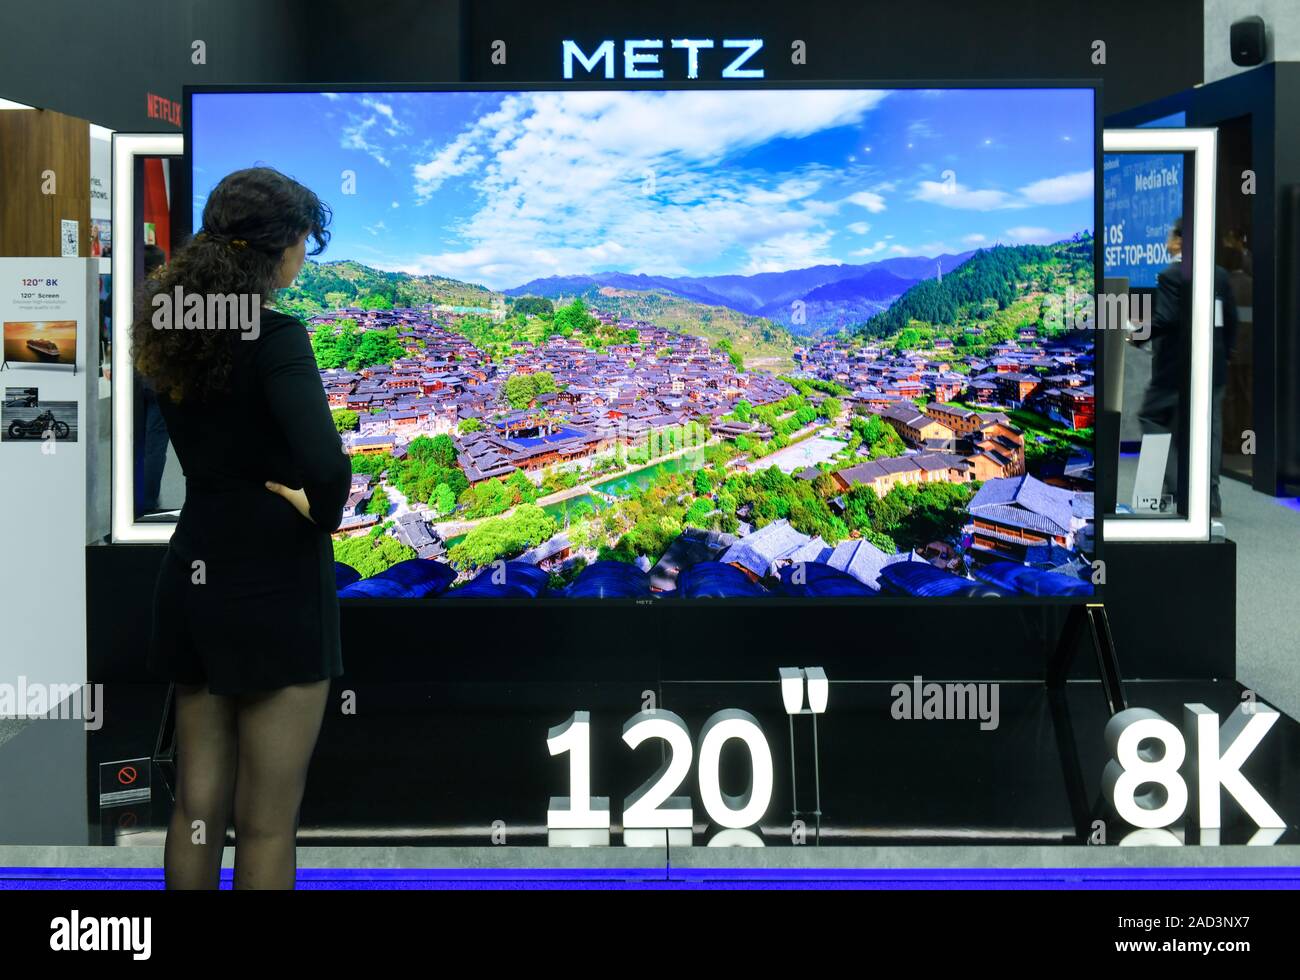 120 Zoll 8k Fernseher von Metz, Internationale Funkaustellung, Berlin 2019,  Deutschland Stockfotografie - Alamy